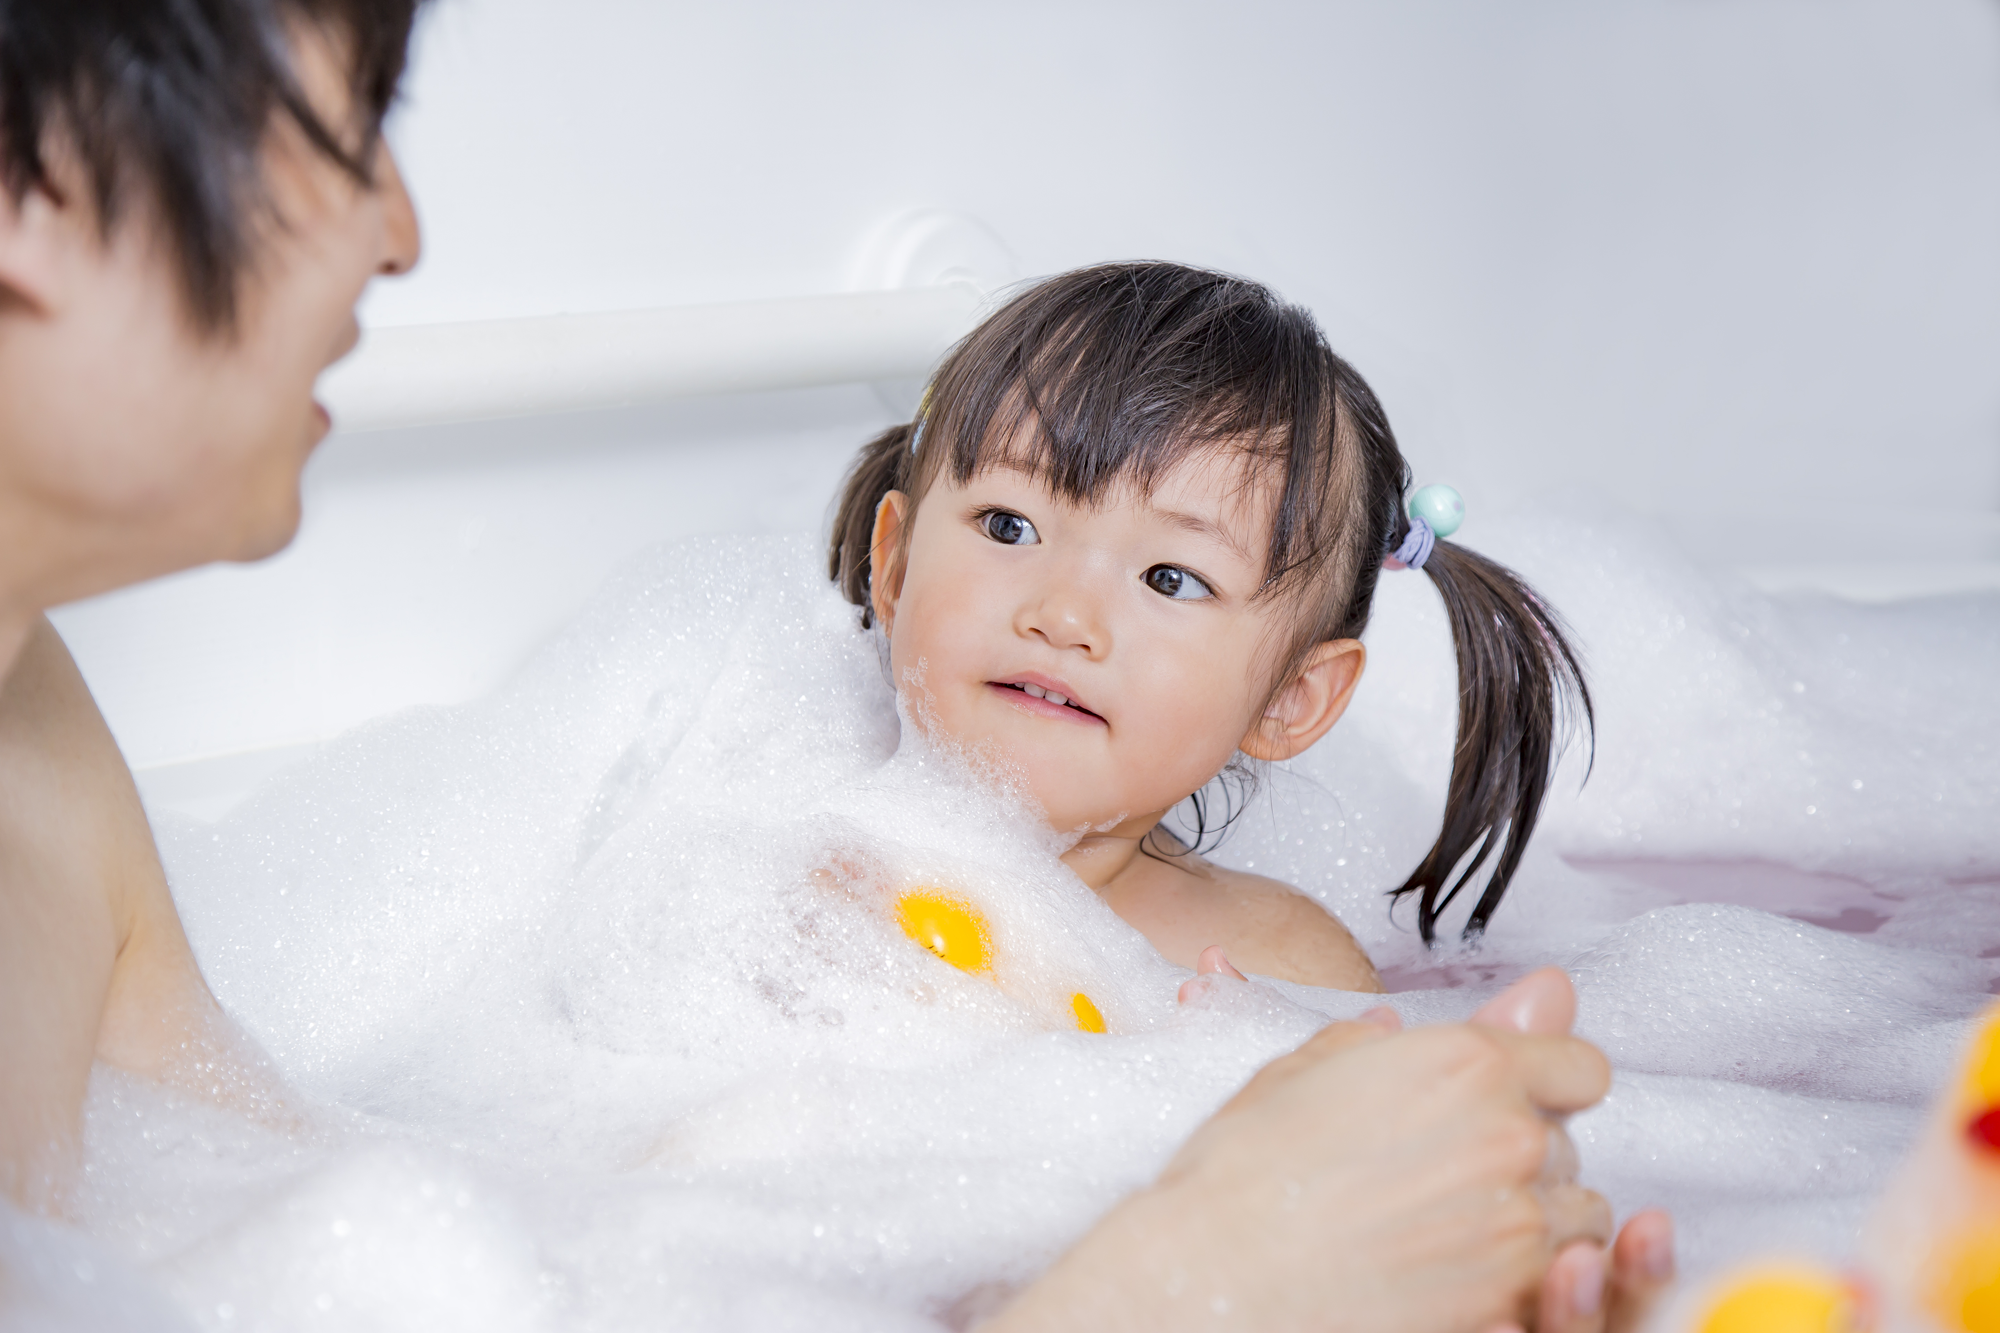 【医師監修】ノロウイルスはお風呂でうつる？ 子どもも大人も注意したい入浴に関するポイント [ノロウイルスなど感染症予防について]